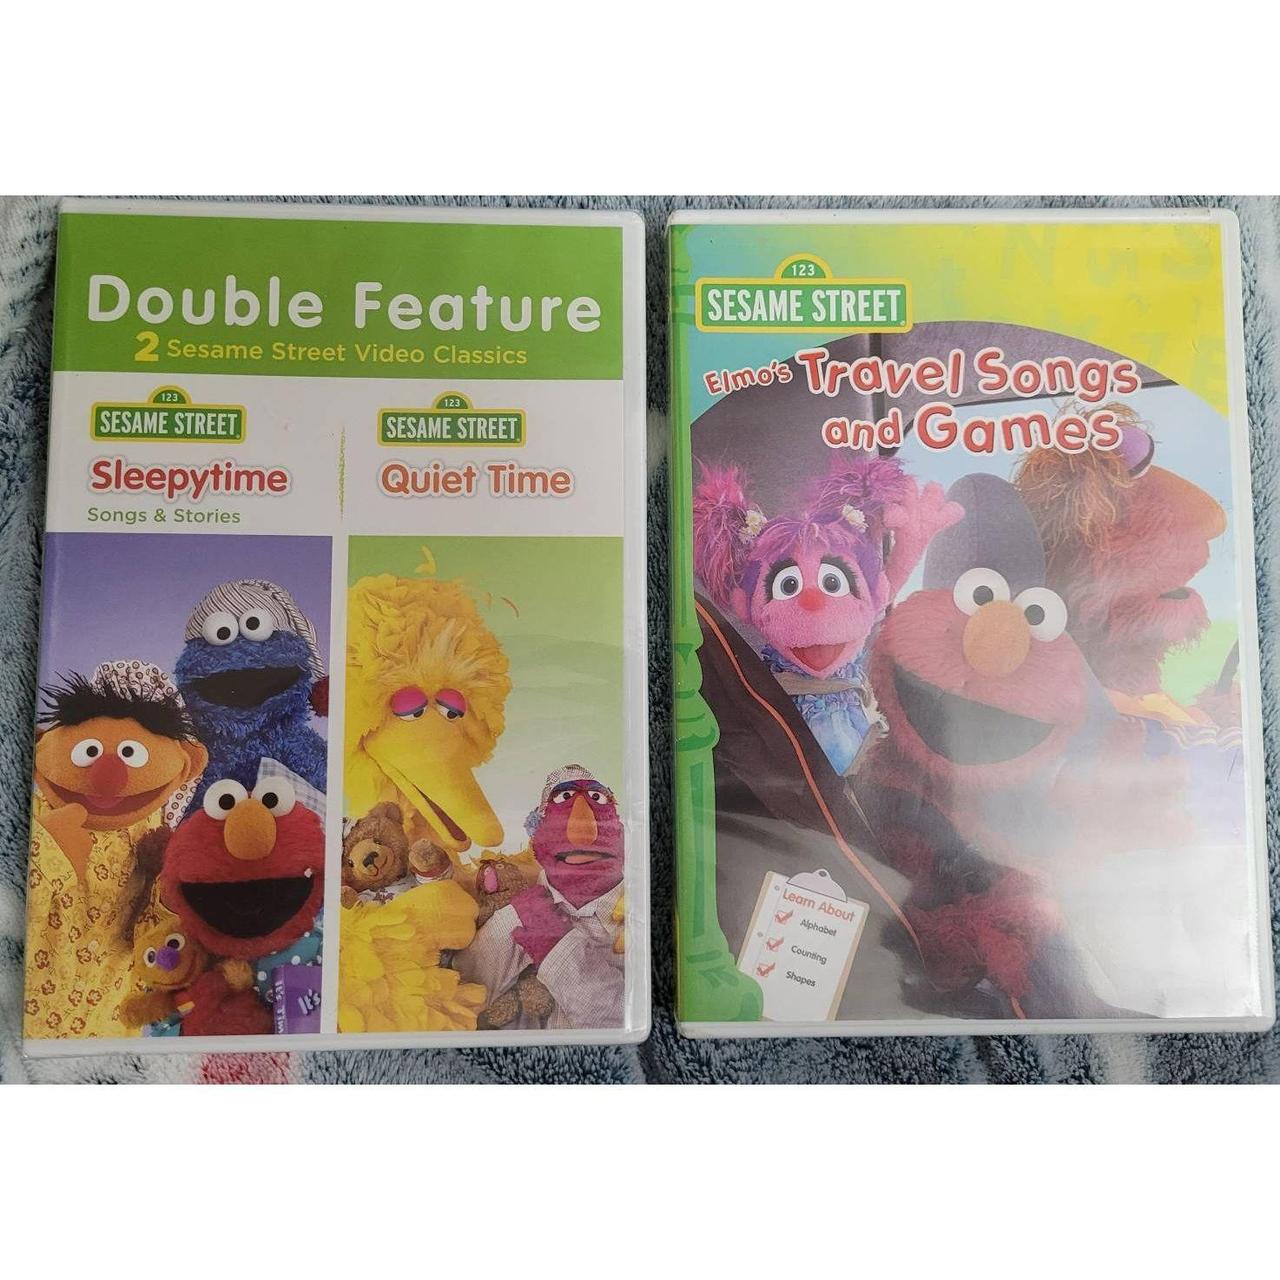 2 new Sesame street dvds. 1 double feature DVD,... - Depop